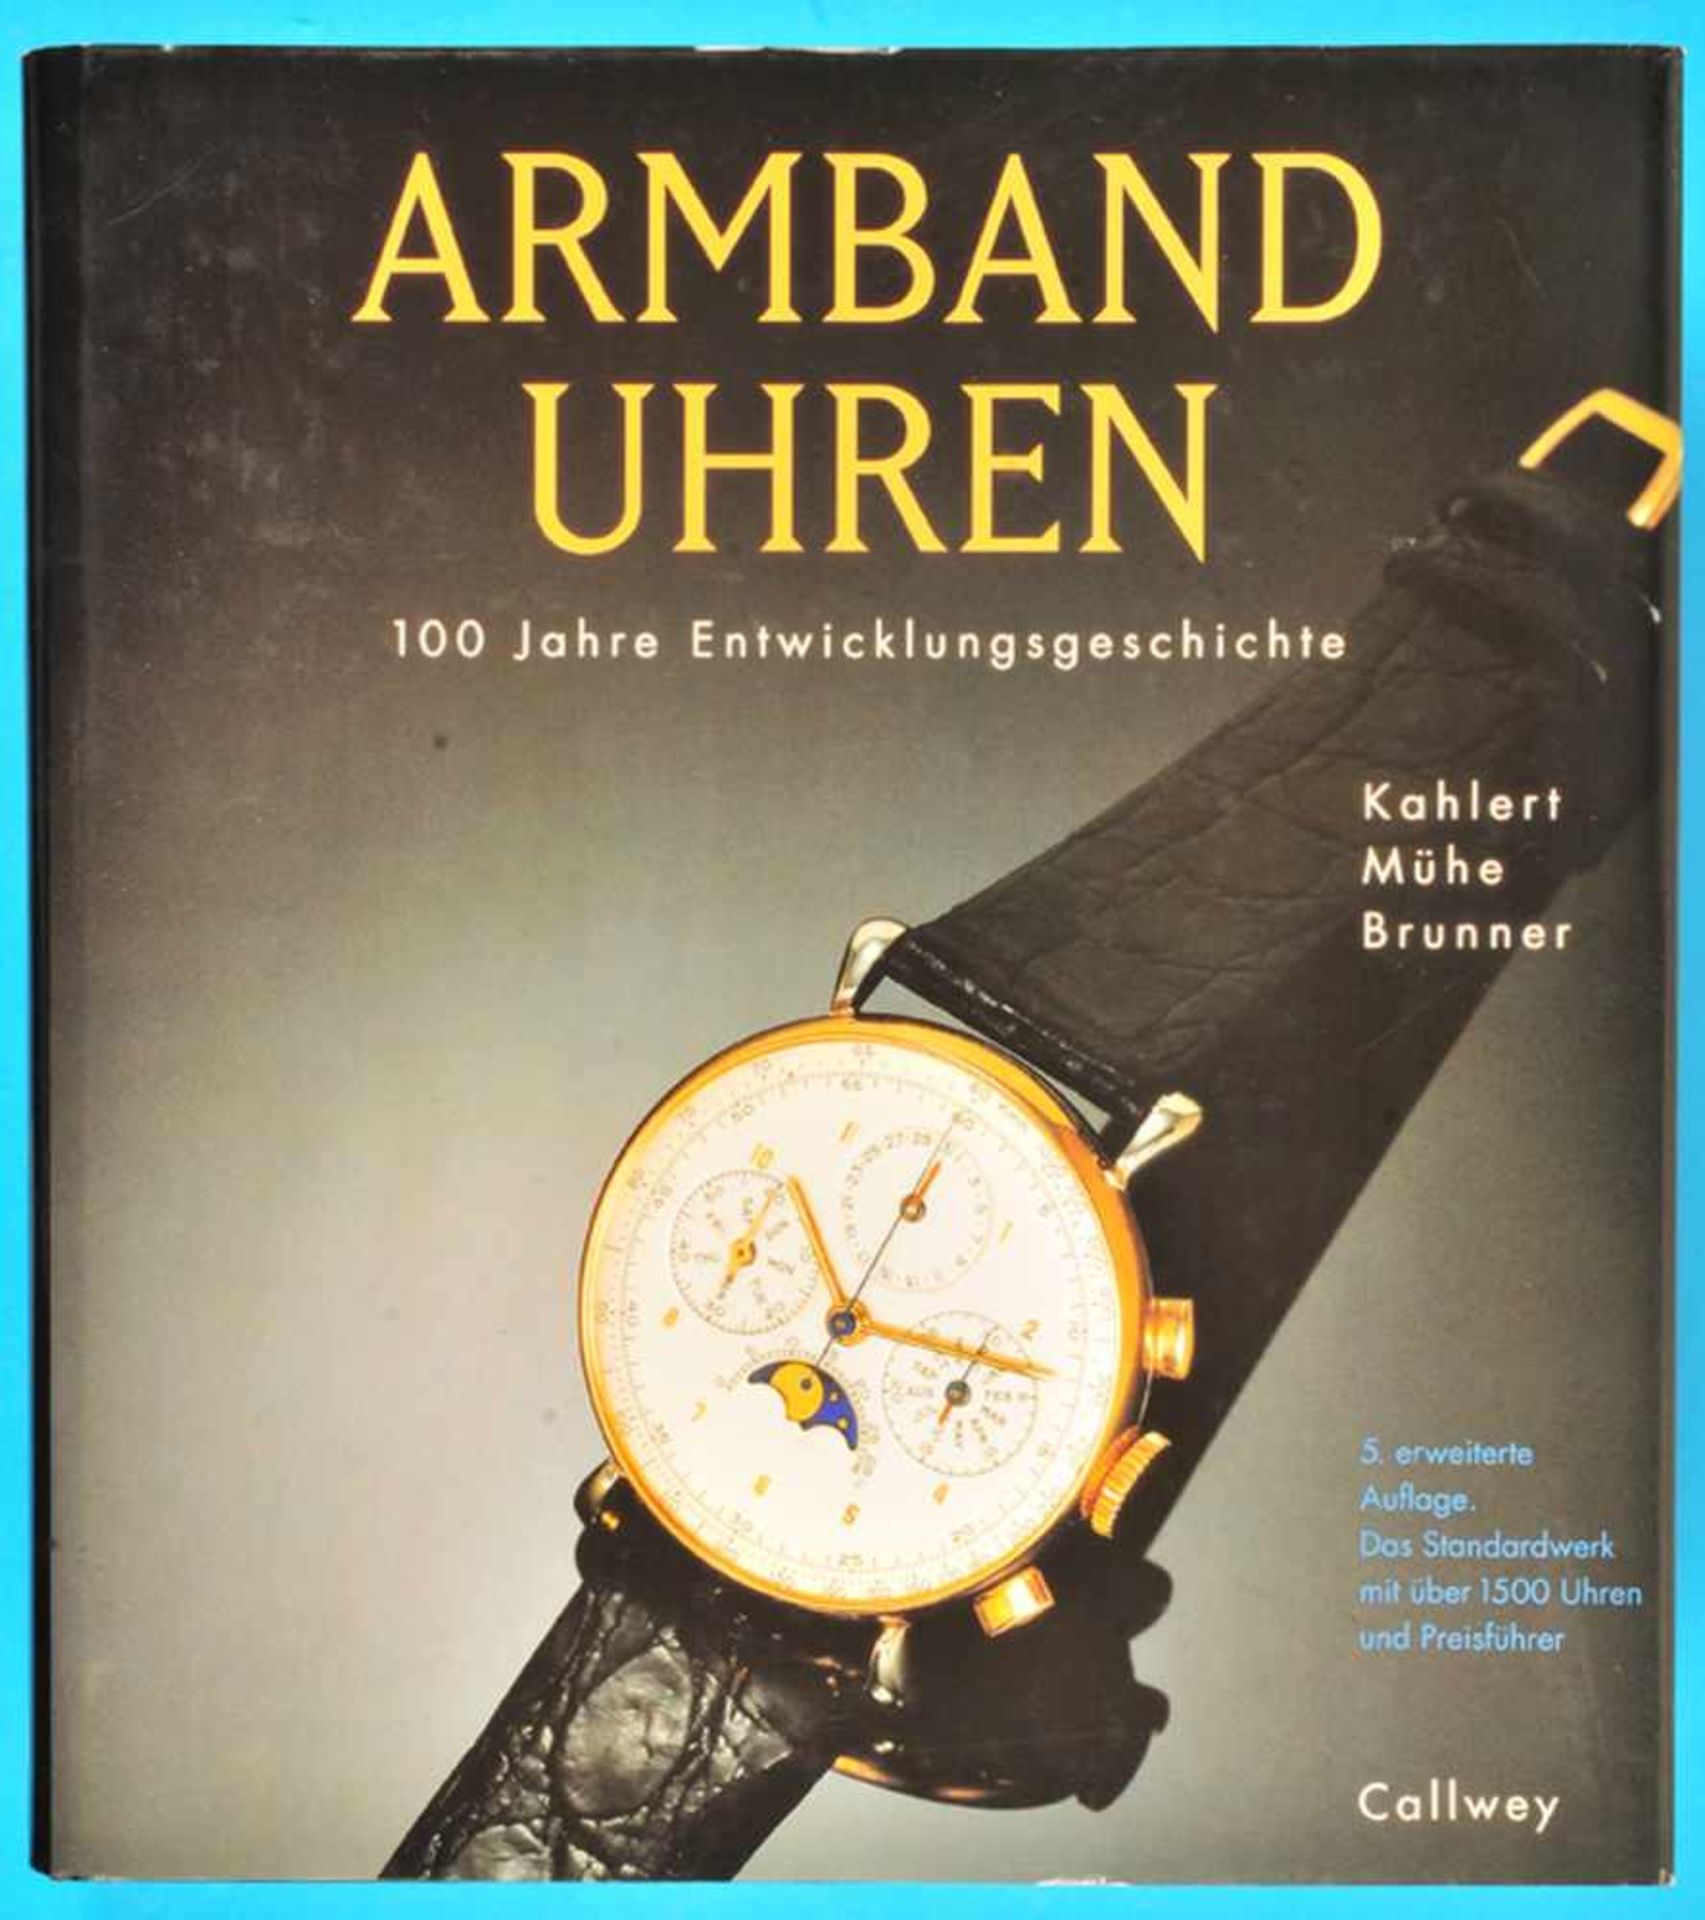 Kahlert/Mühe/Brunner, Armbanduhren - 100 Jahre Entwicklungsgeschichte, 5., korrigierte und